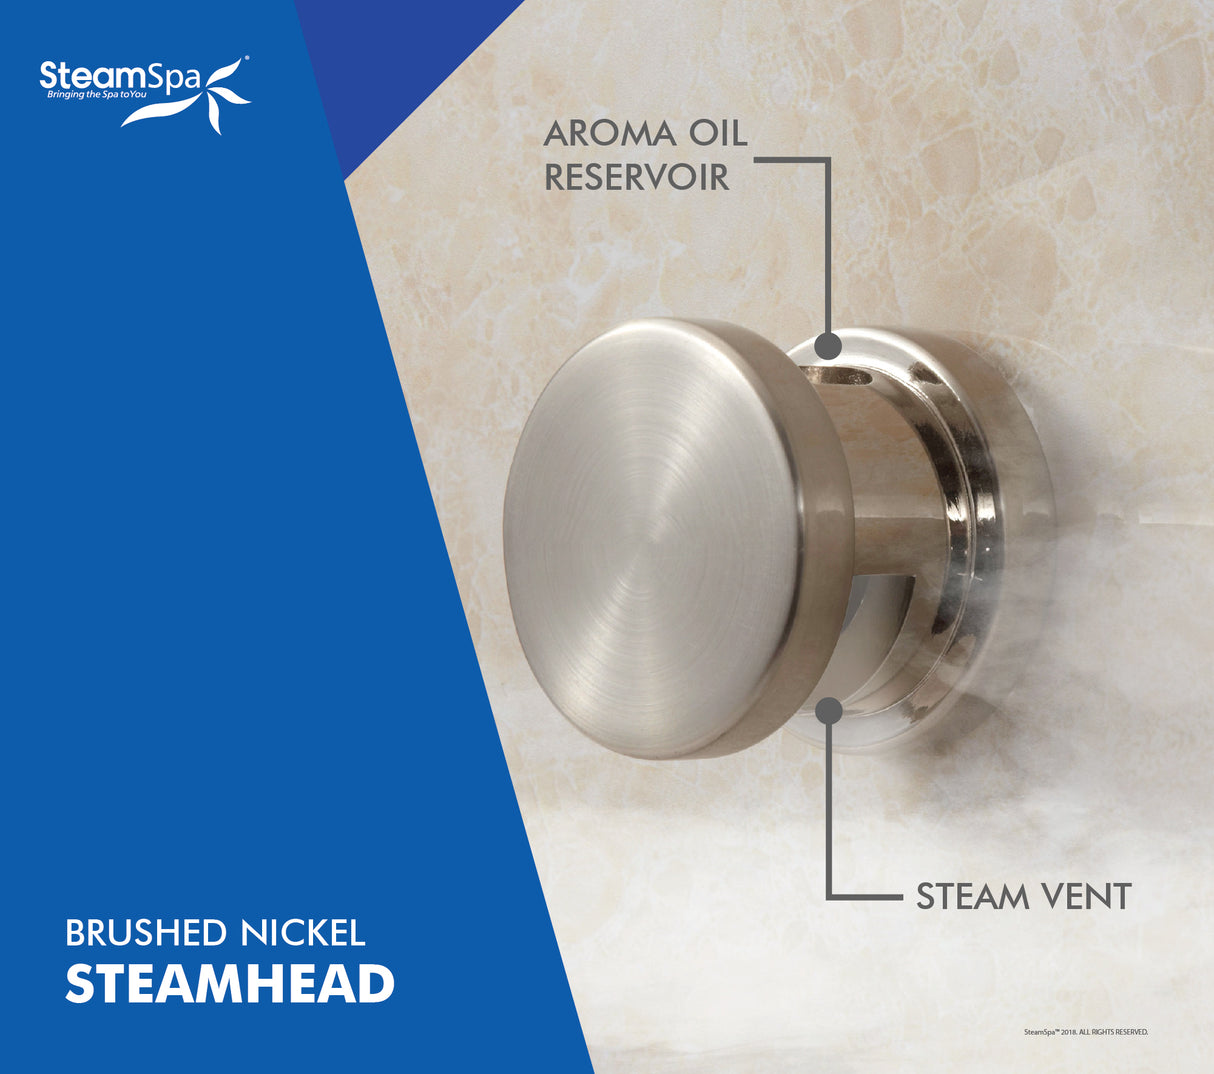 SteamSpa Indulgence 9 KW QuickStart Acu-Steam Bath Generator Package in Brushed Nickel IN900BN